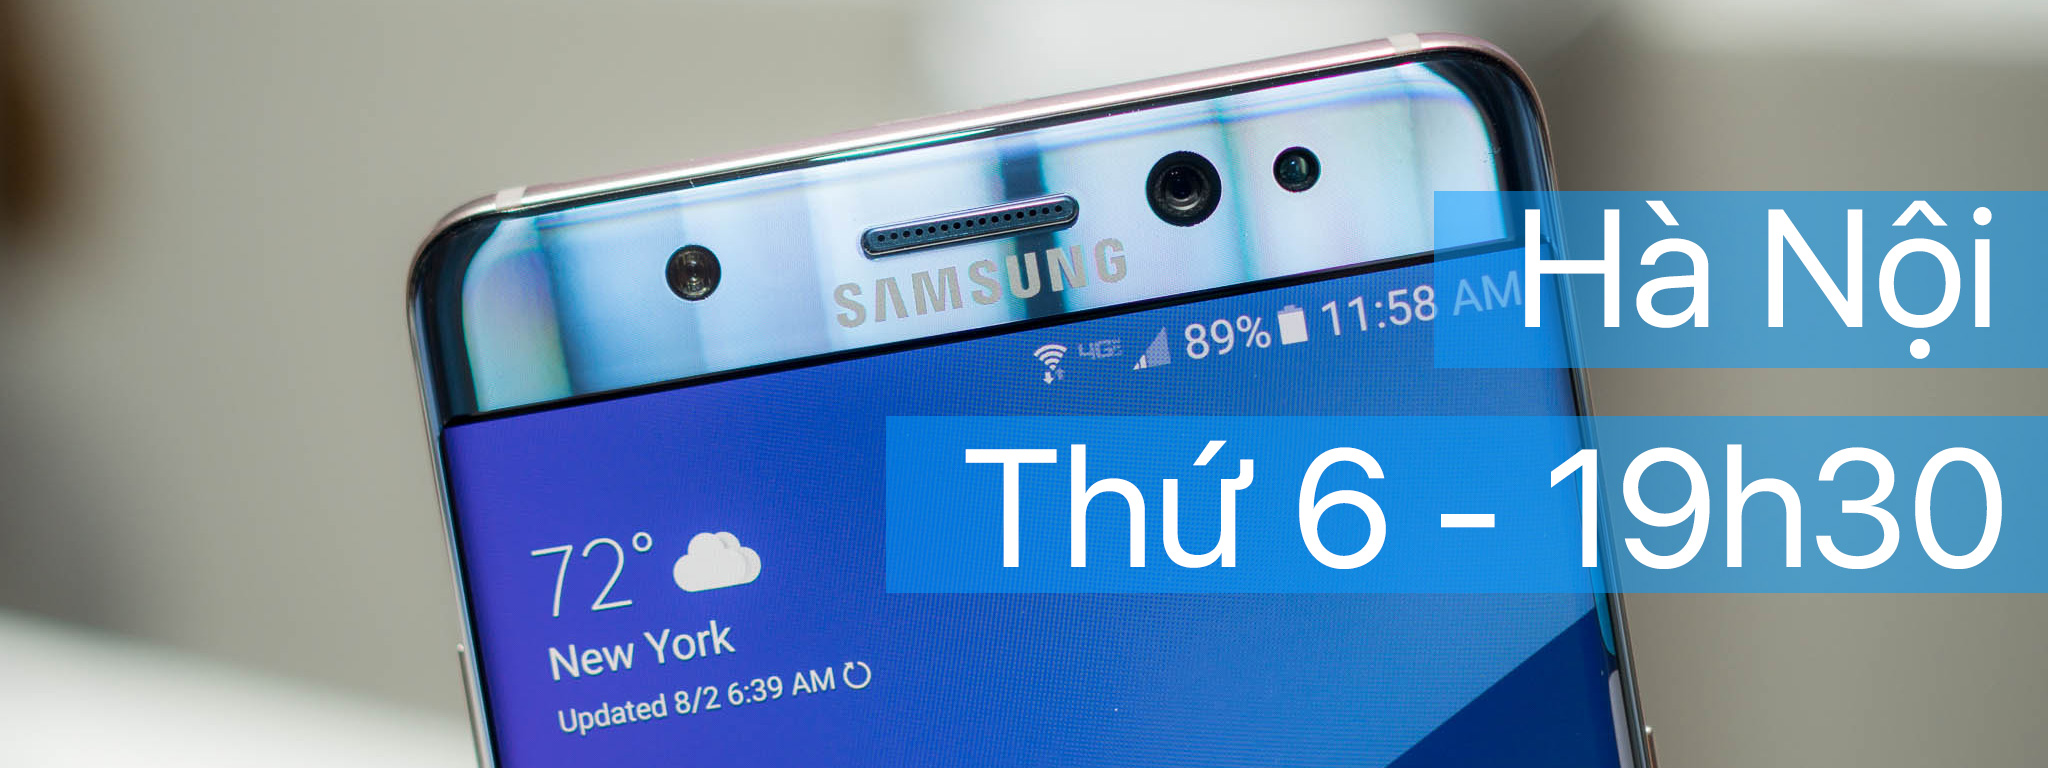 Mời offline Galaxy Note 7 ở Hà Nội, tối thứ 6 tuần này (12/8)